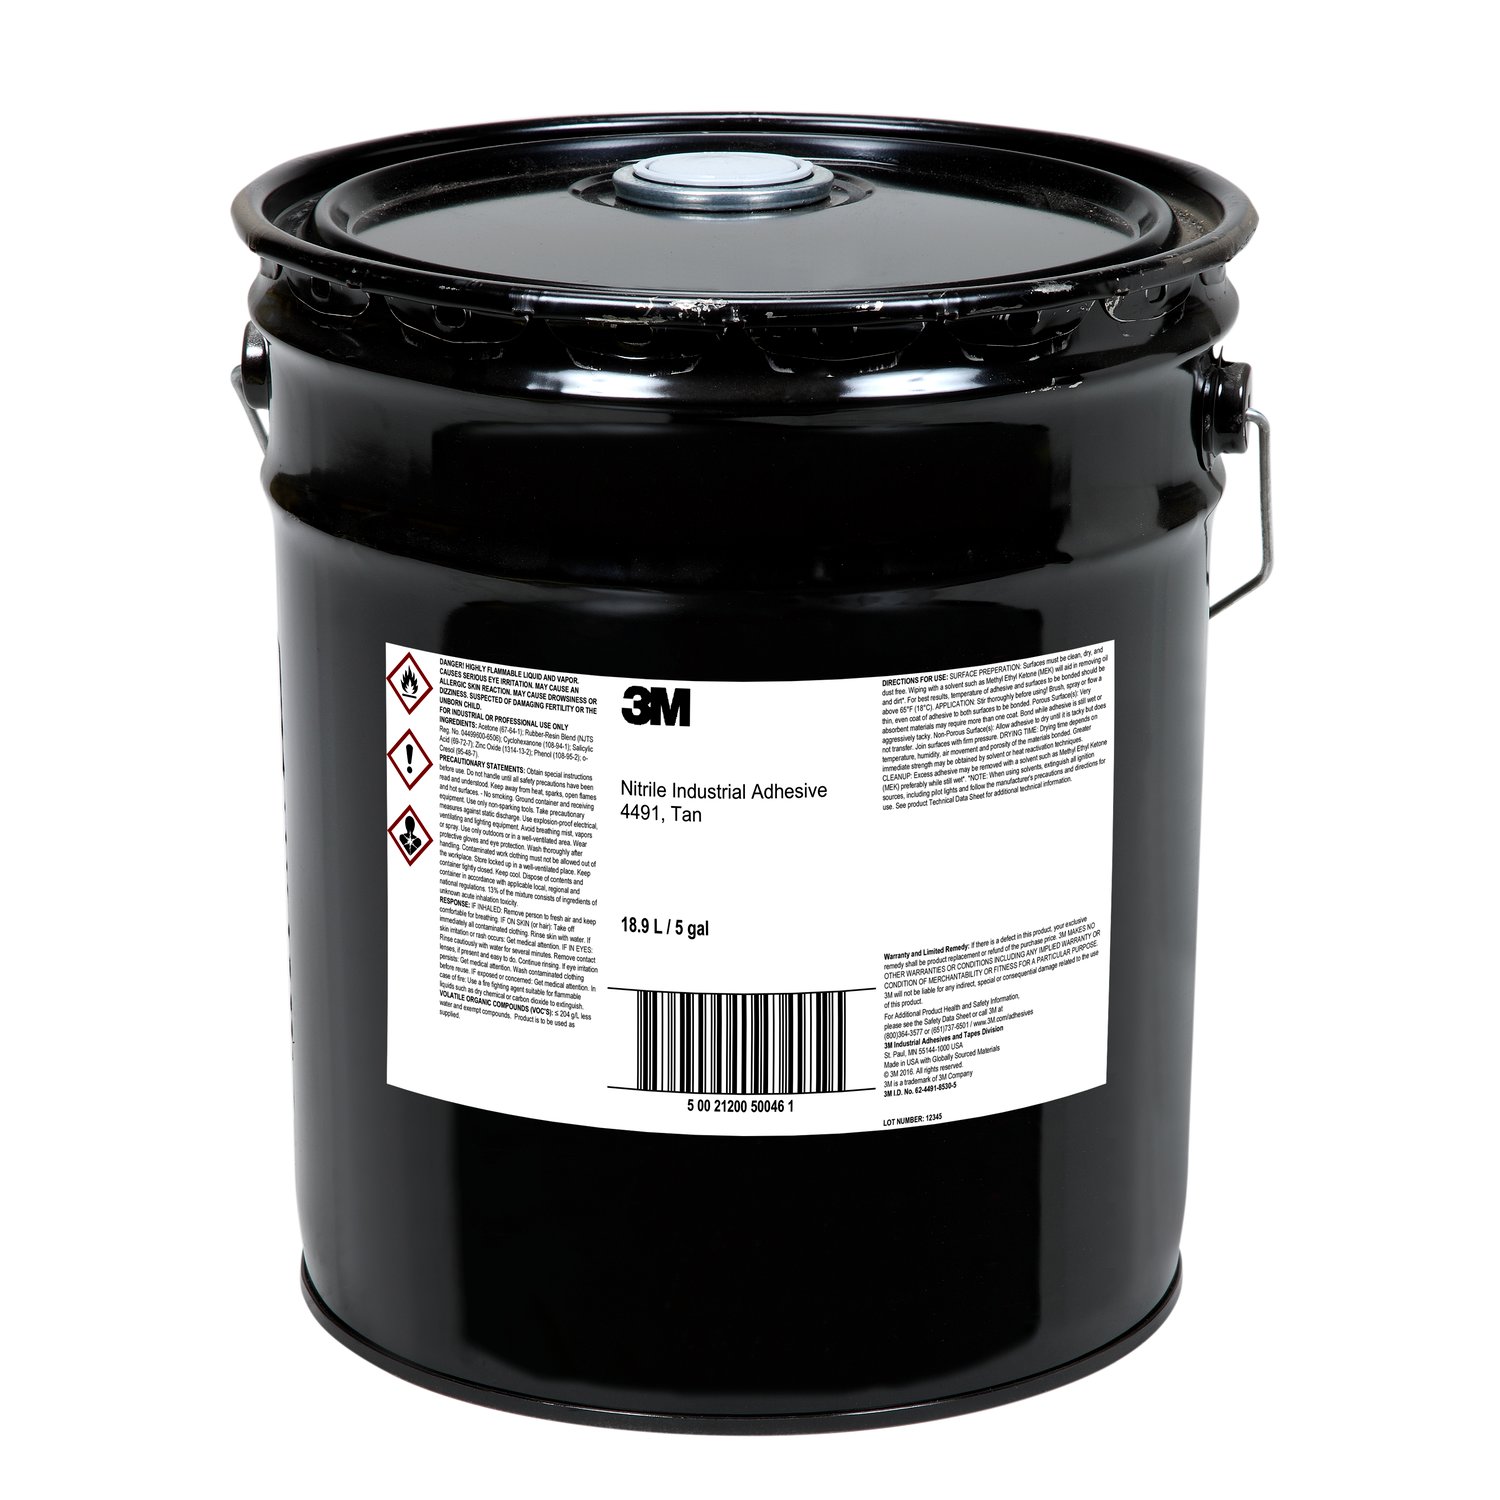 7010310263 - 3M Nitrile Industrial Adhesive 4491, Tan, 5 Gallon, Pour Spout, Drum